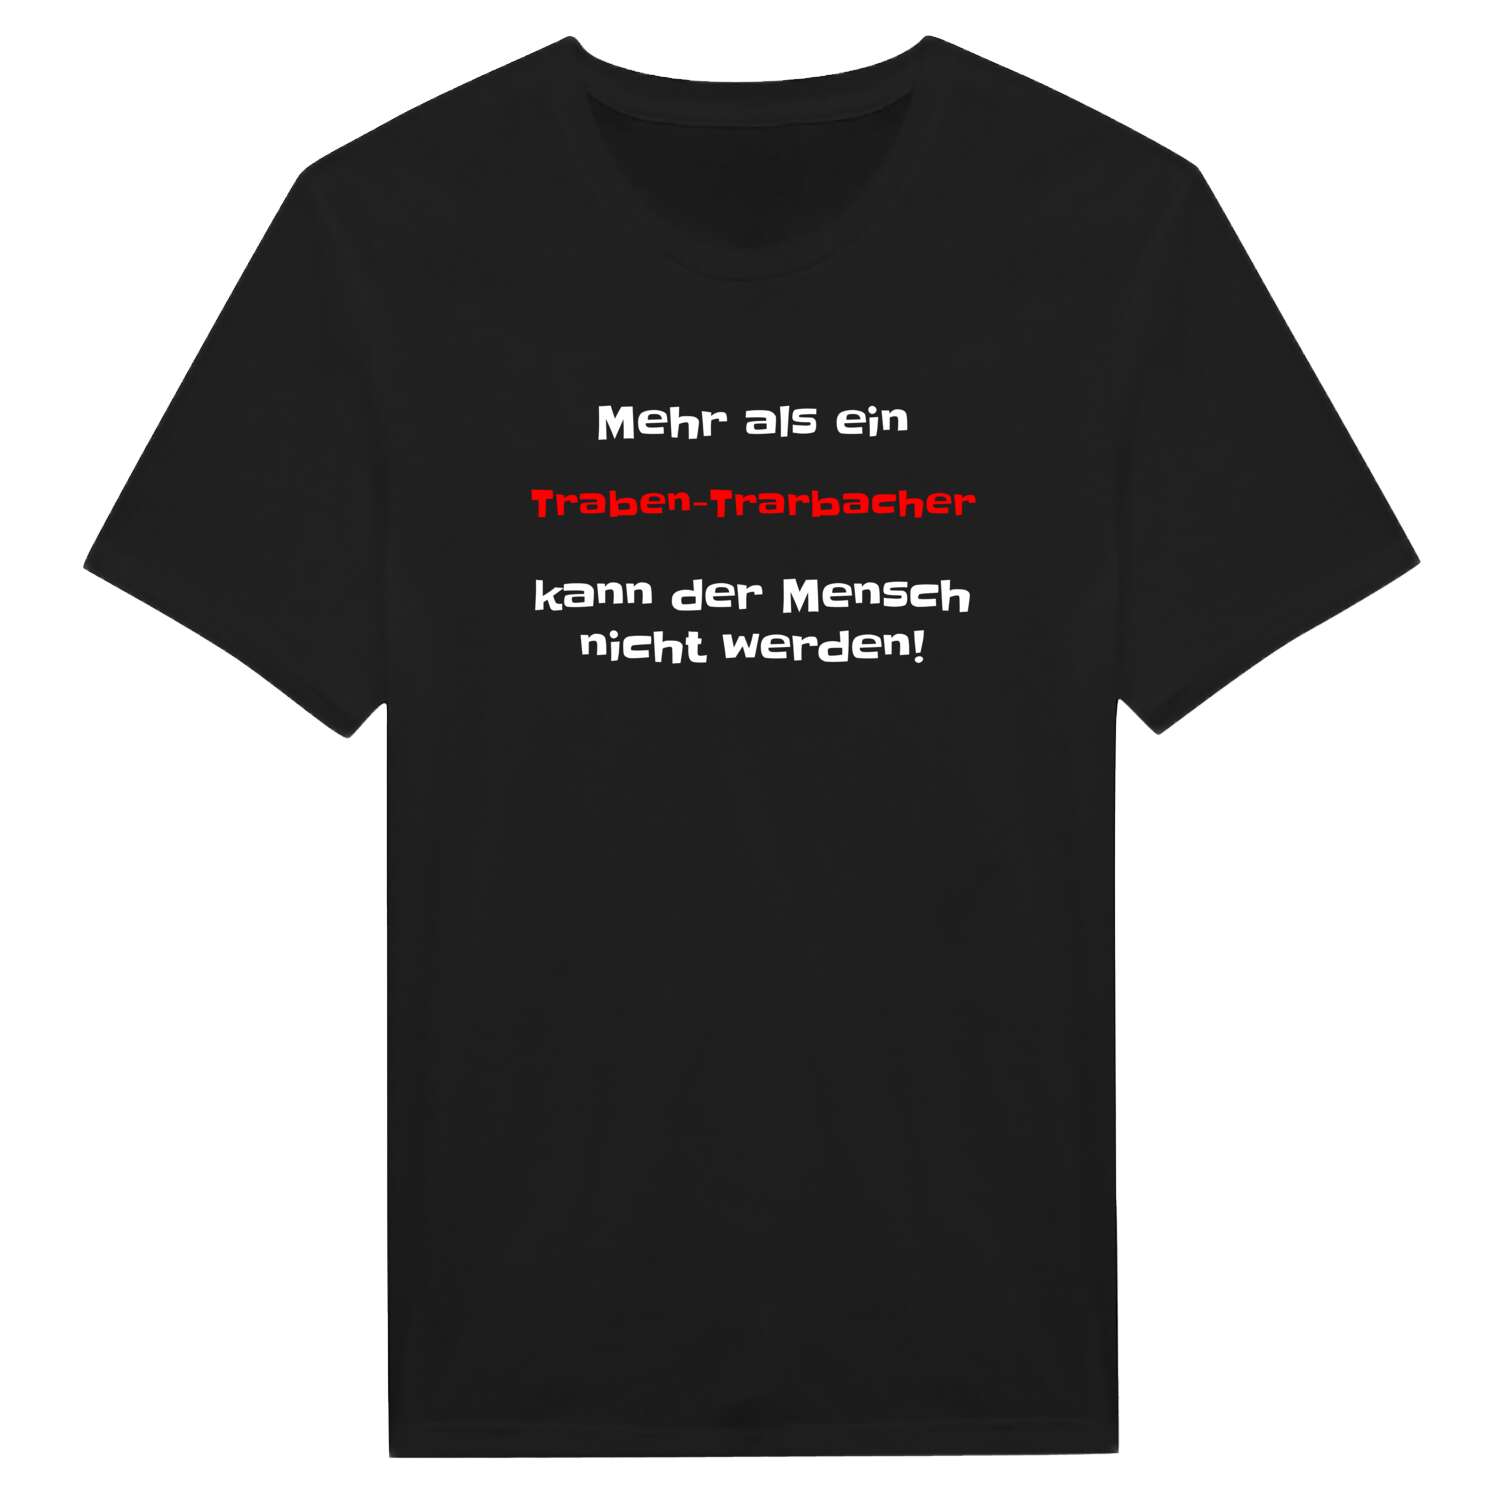 Traben-Trarbach T-Shirt »Mehr als ein«